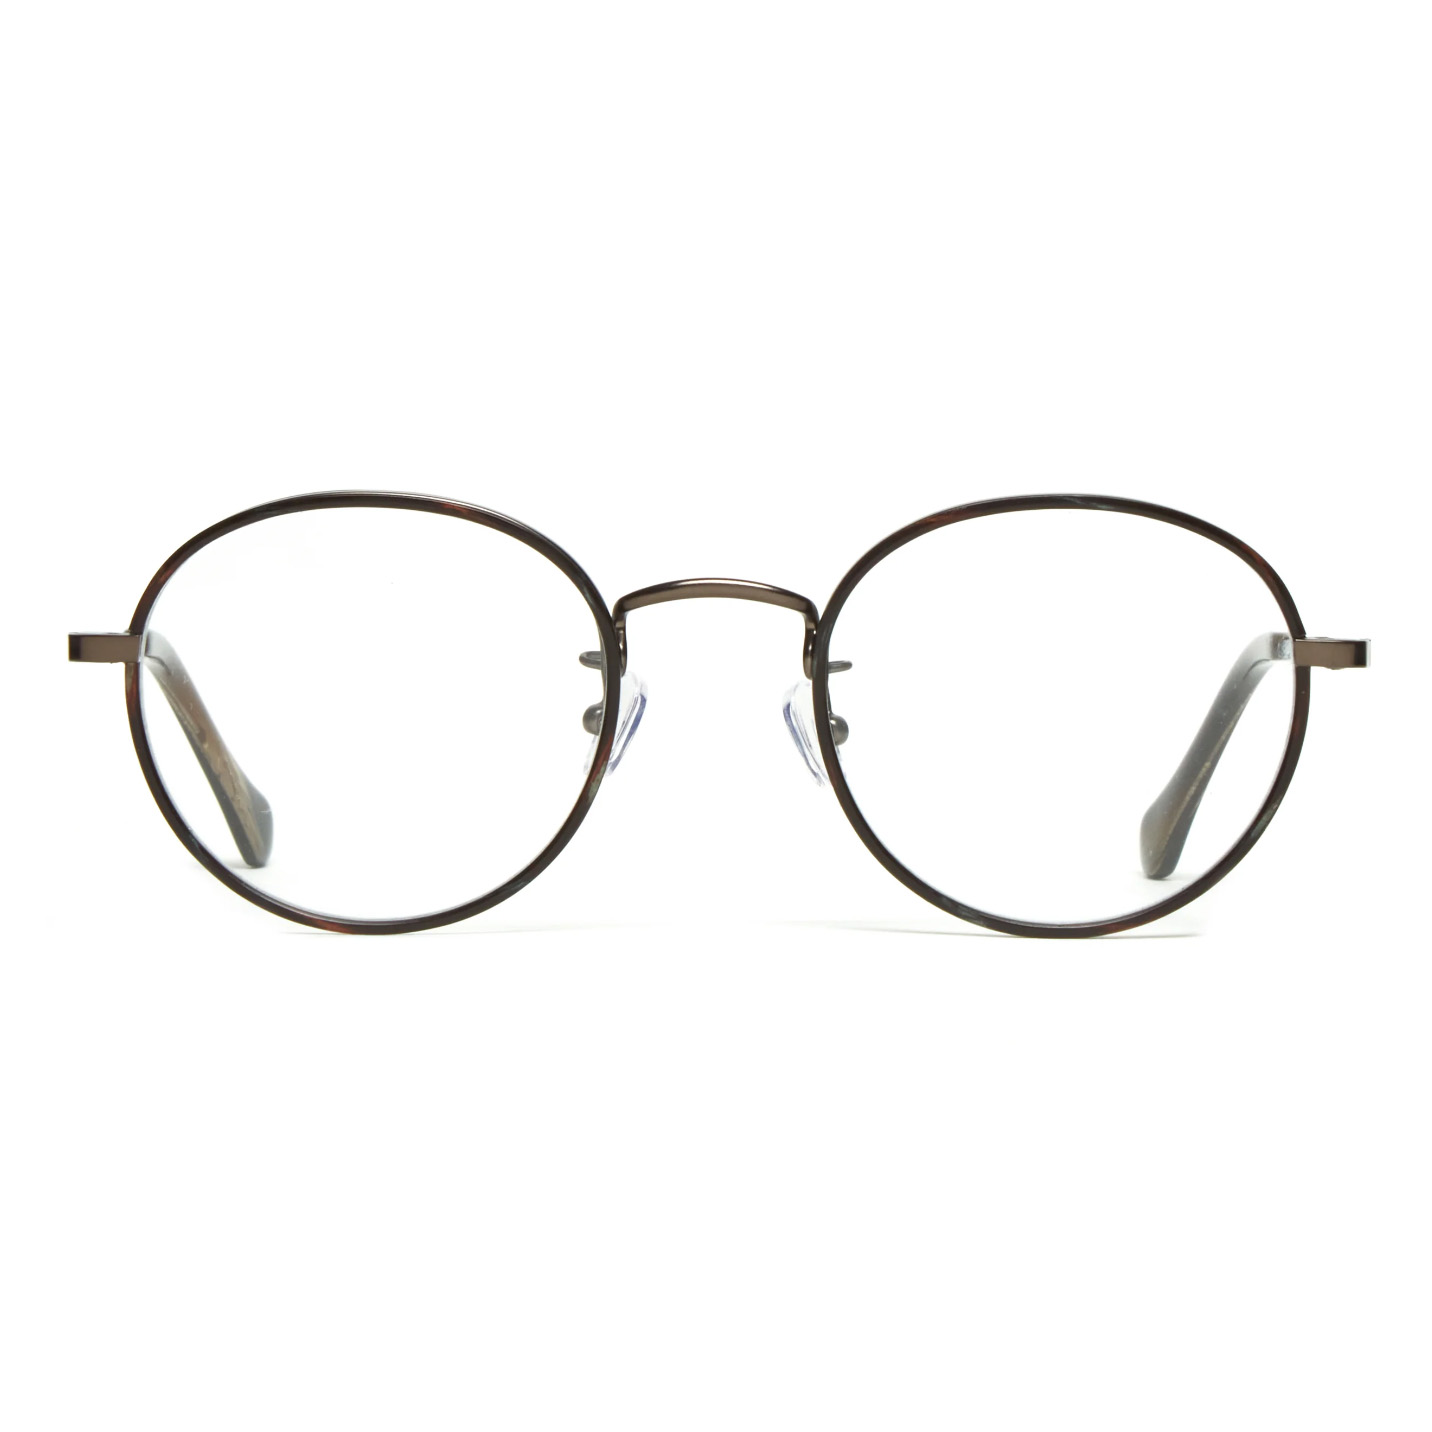 Round-framed glasses